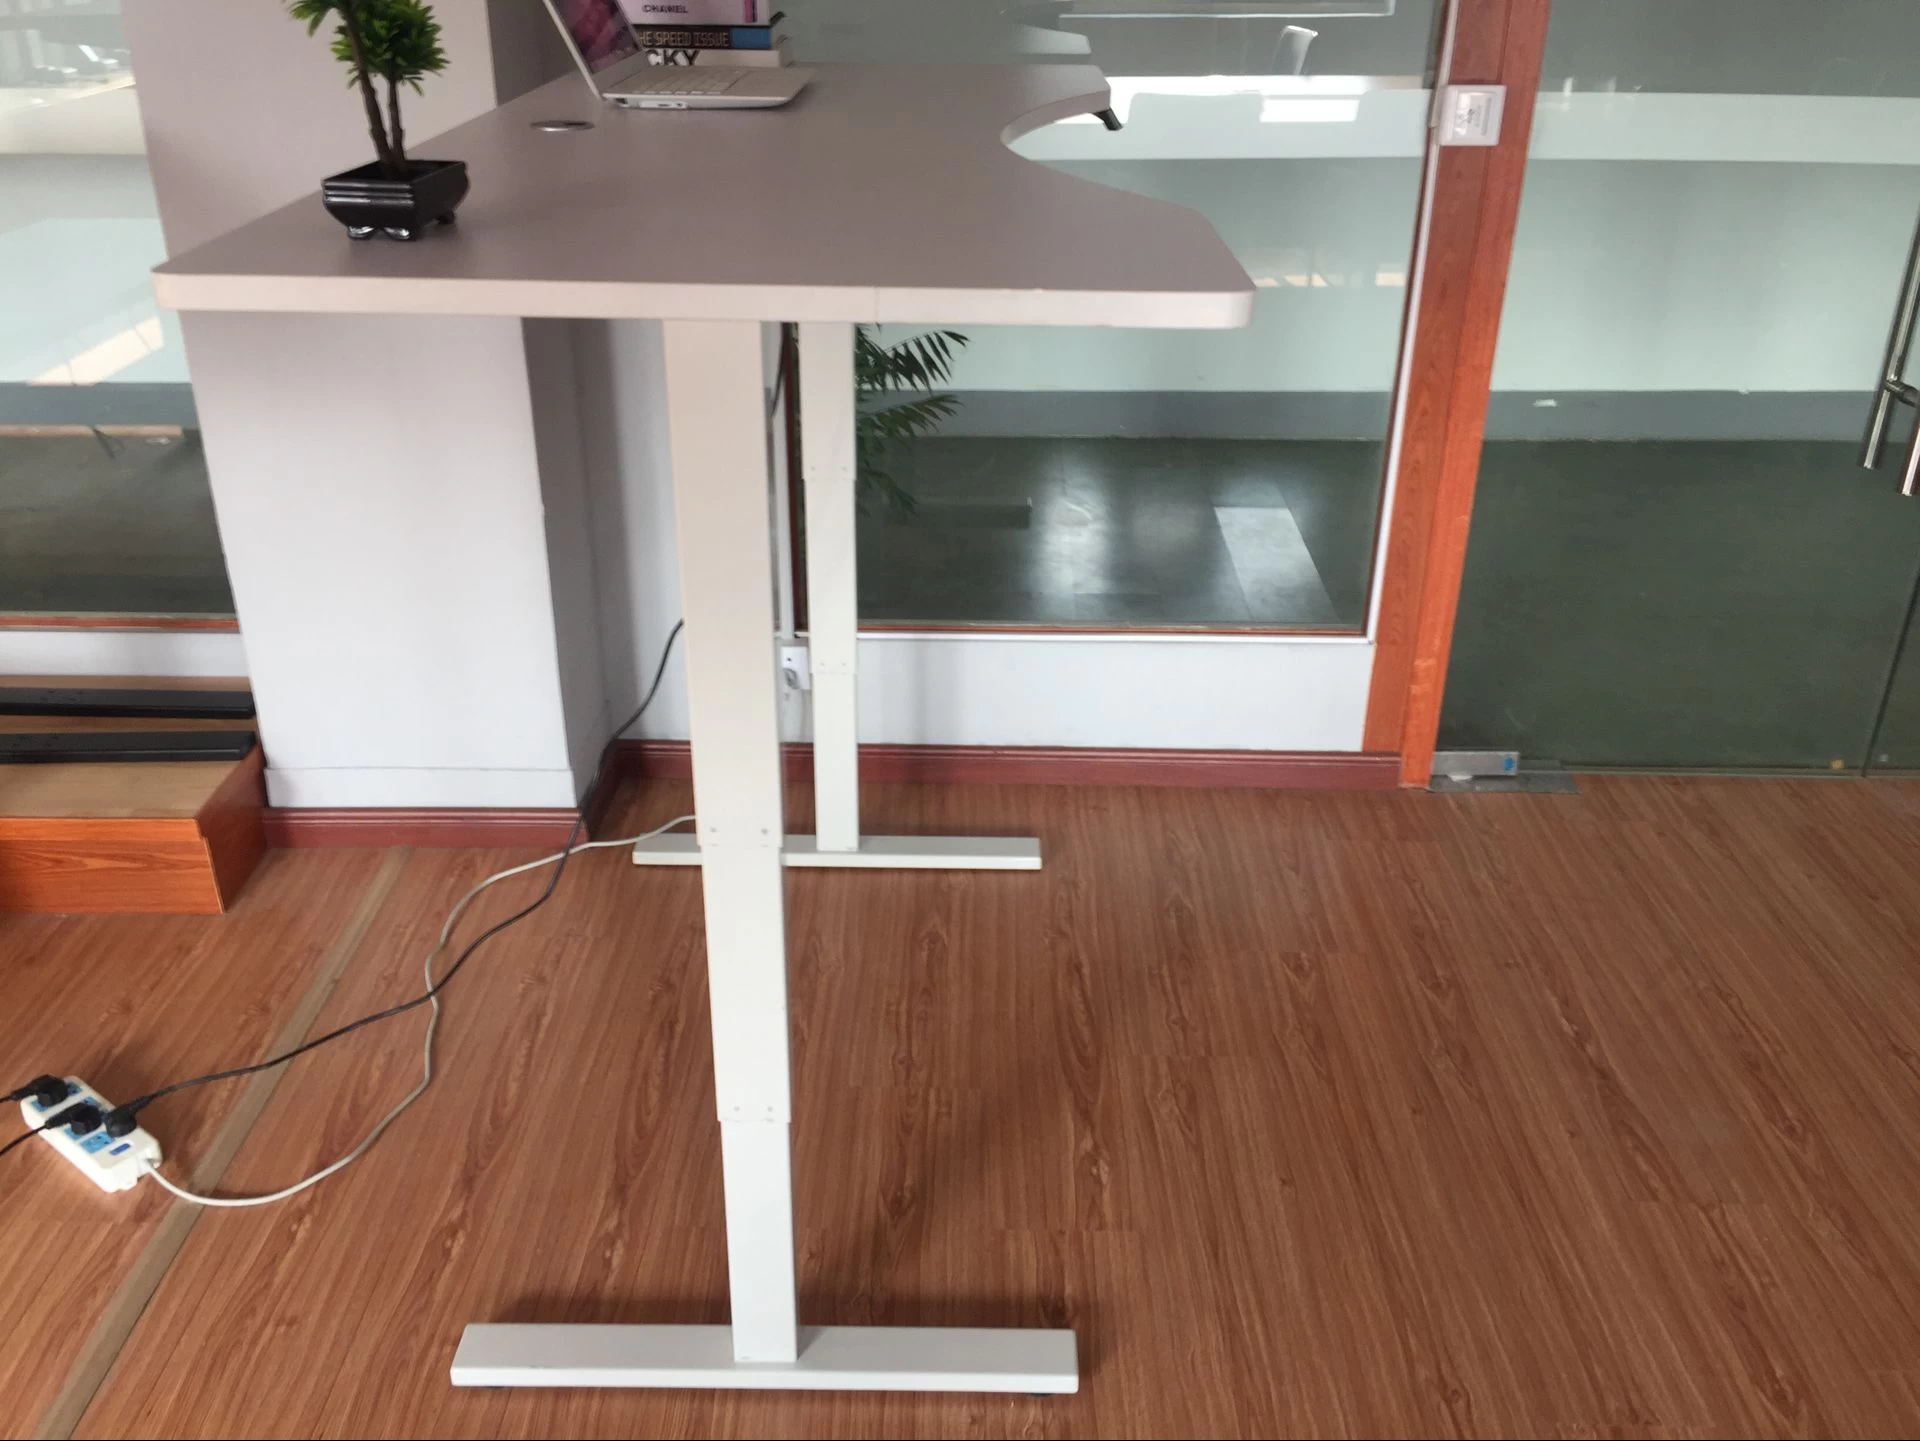 طاولة خشبية أعلى مكتب الارتفاع قابل للتعديل الارتفاع كهربائية قابل للتعديل مكتب